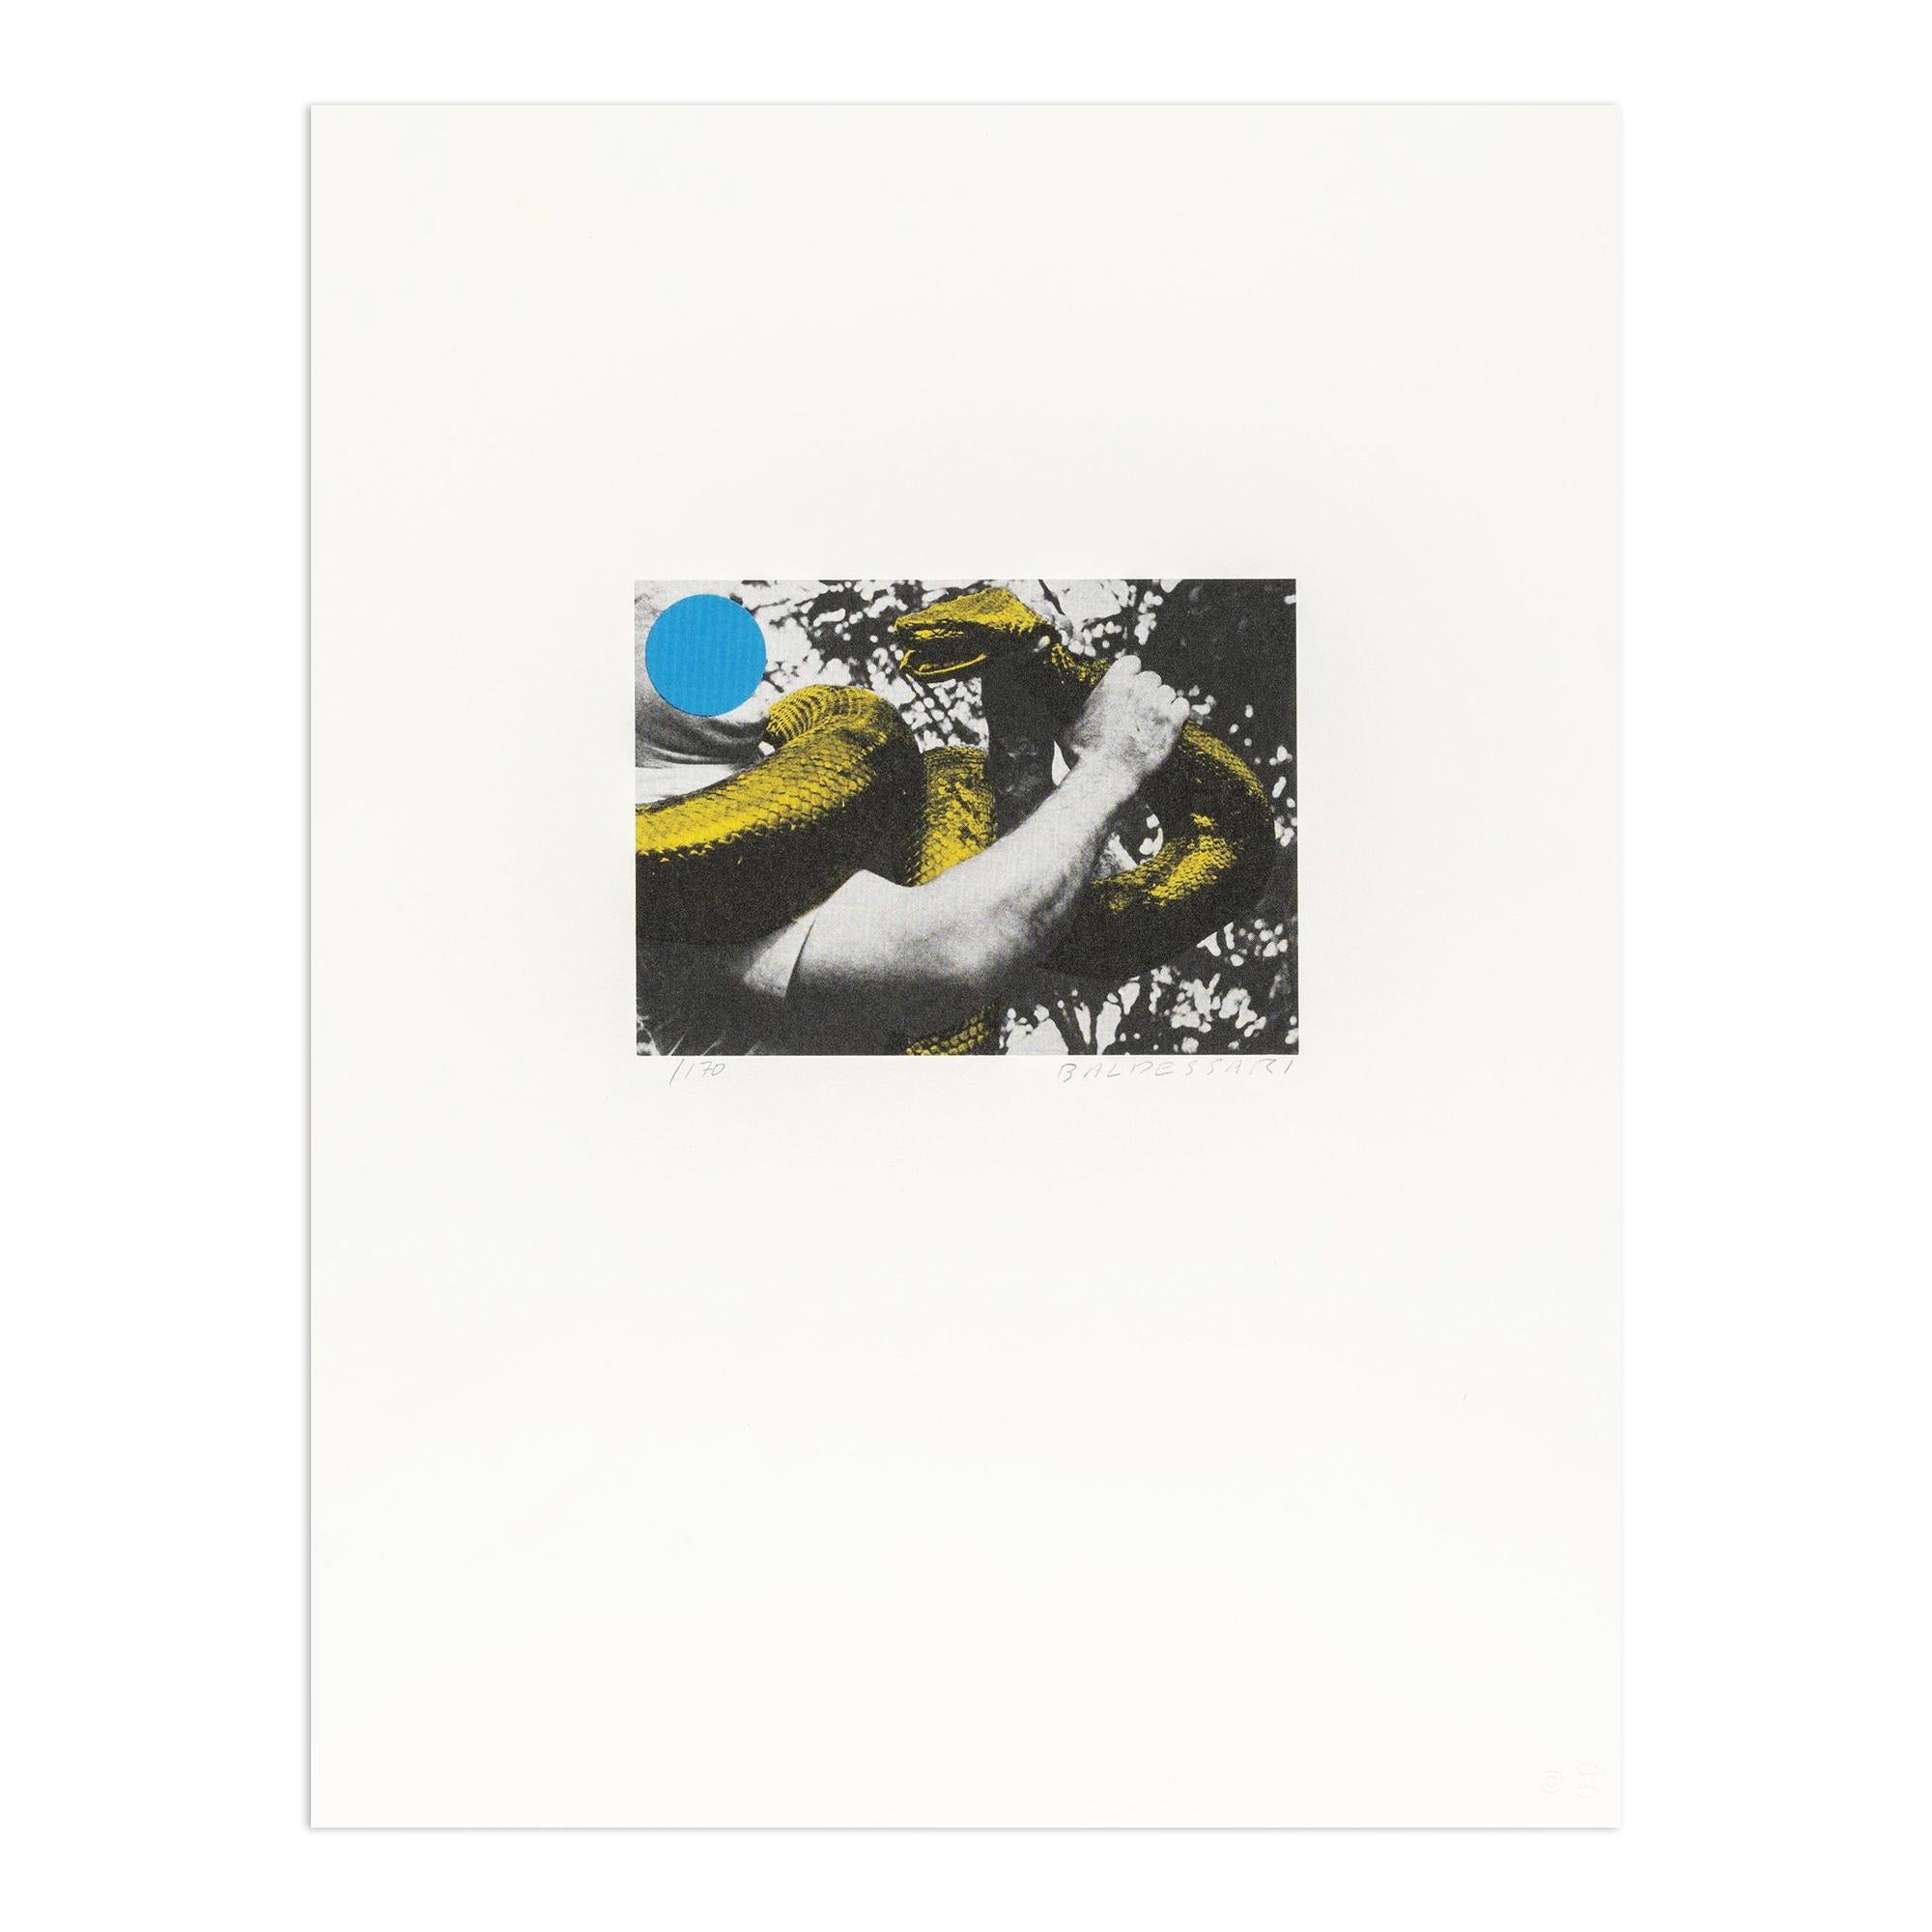 John Baldessari Abstract Print - Man With Snake, Contemporary Art, Conceptual Art, 20th Century